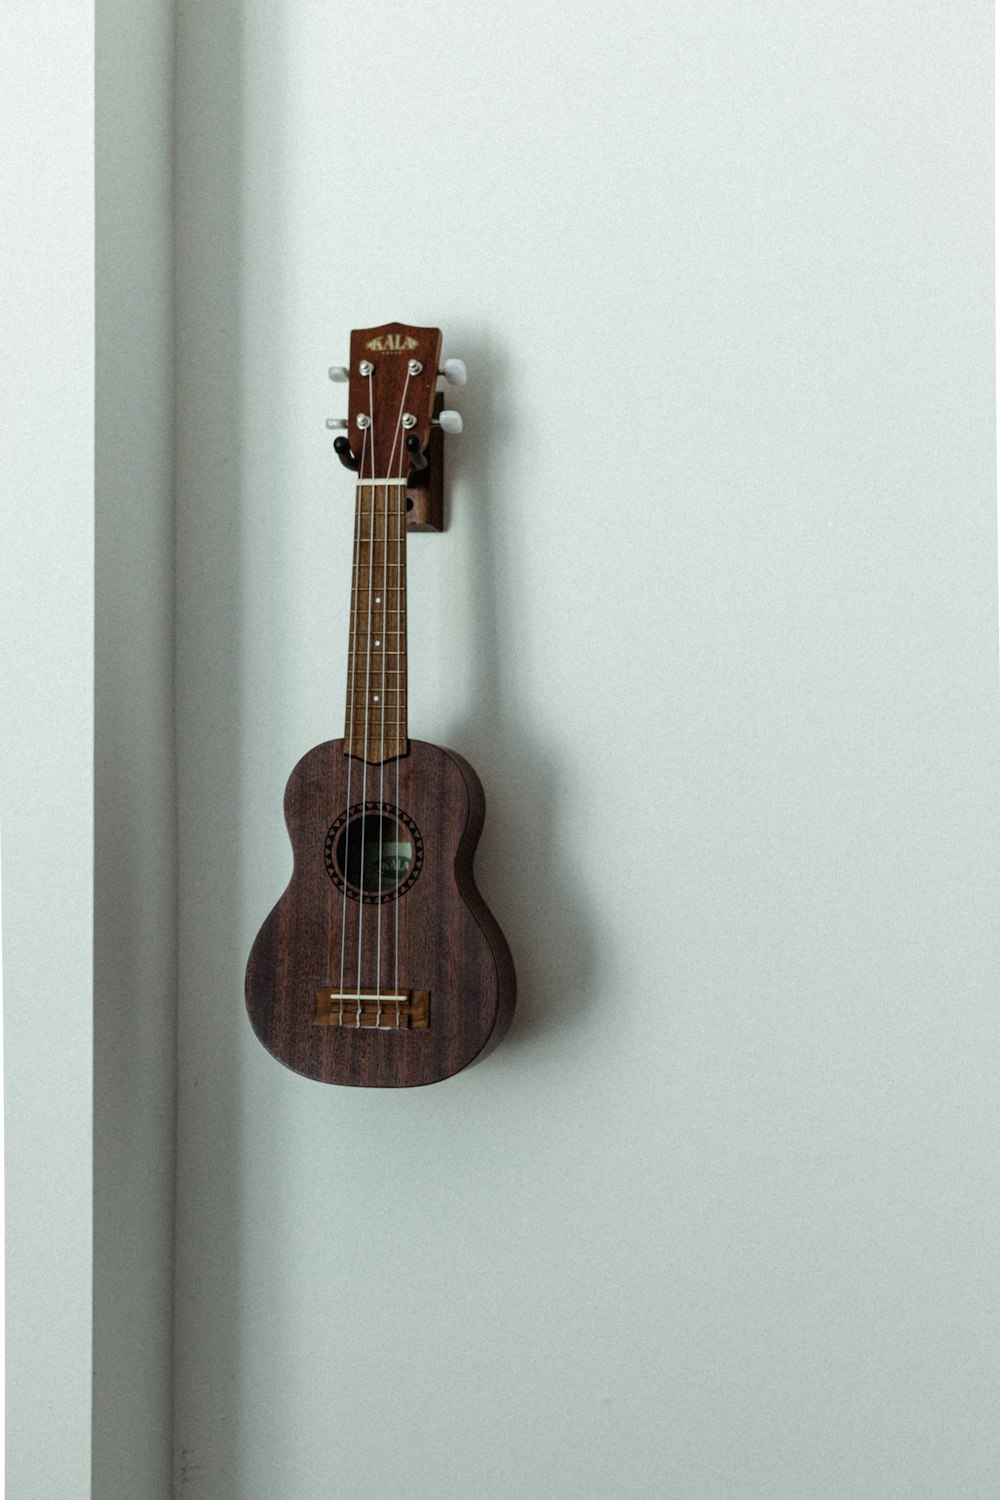 guitarra acústica marrom na parede branca